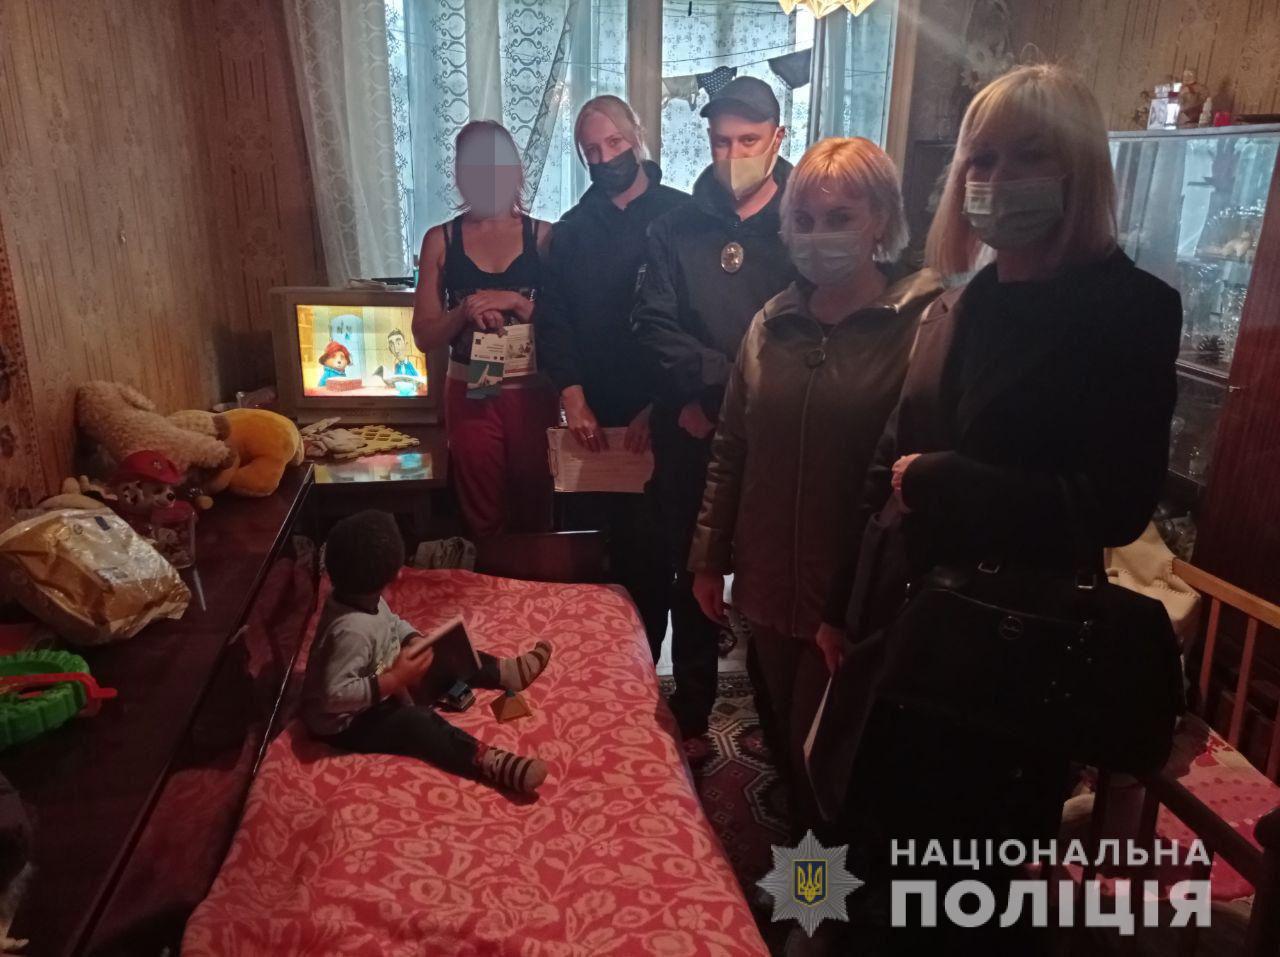 "В воспитательных целях": в Харькове мать била ребенка прямо посреди улицы